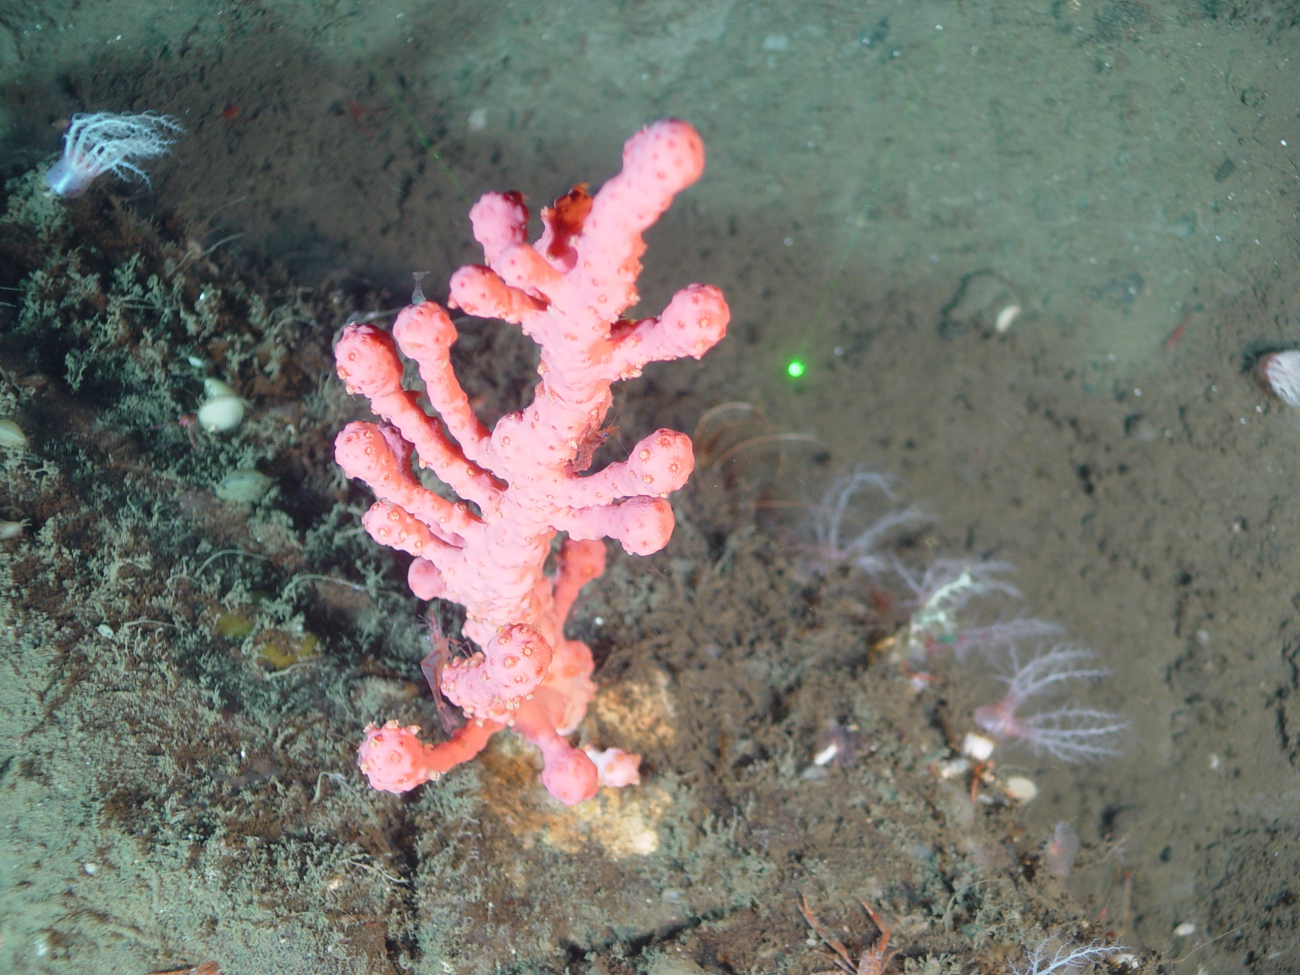 Deep sea coral (Paragorgia arborea pacifica)